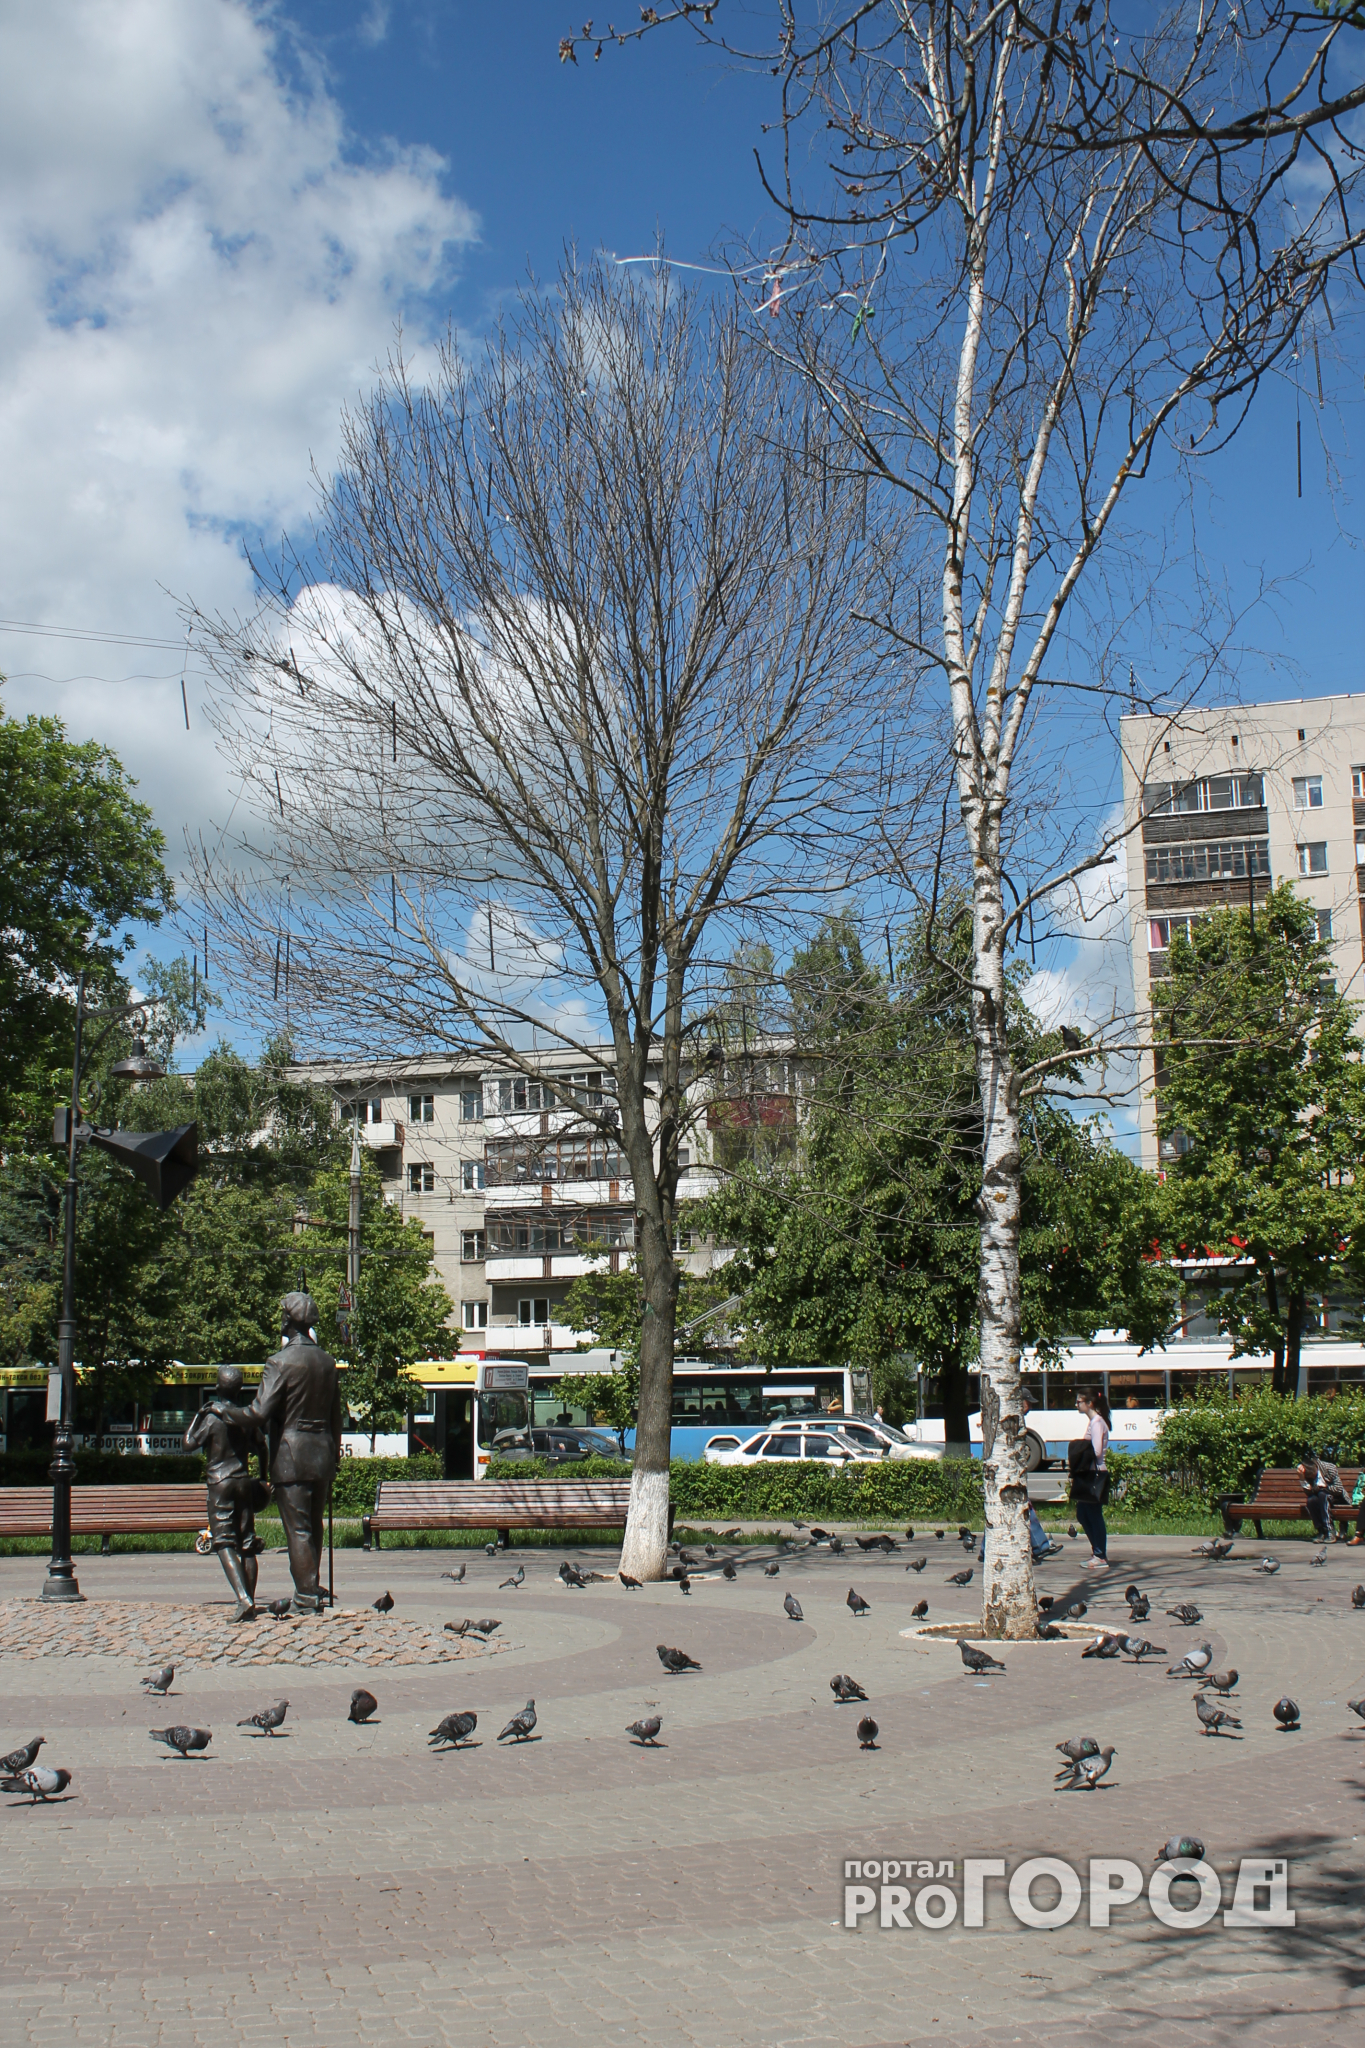 У памятника диктору Левитану сухие деревья угрожают здоровью горожан